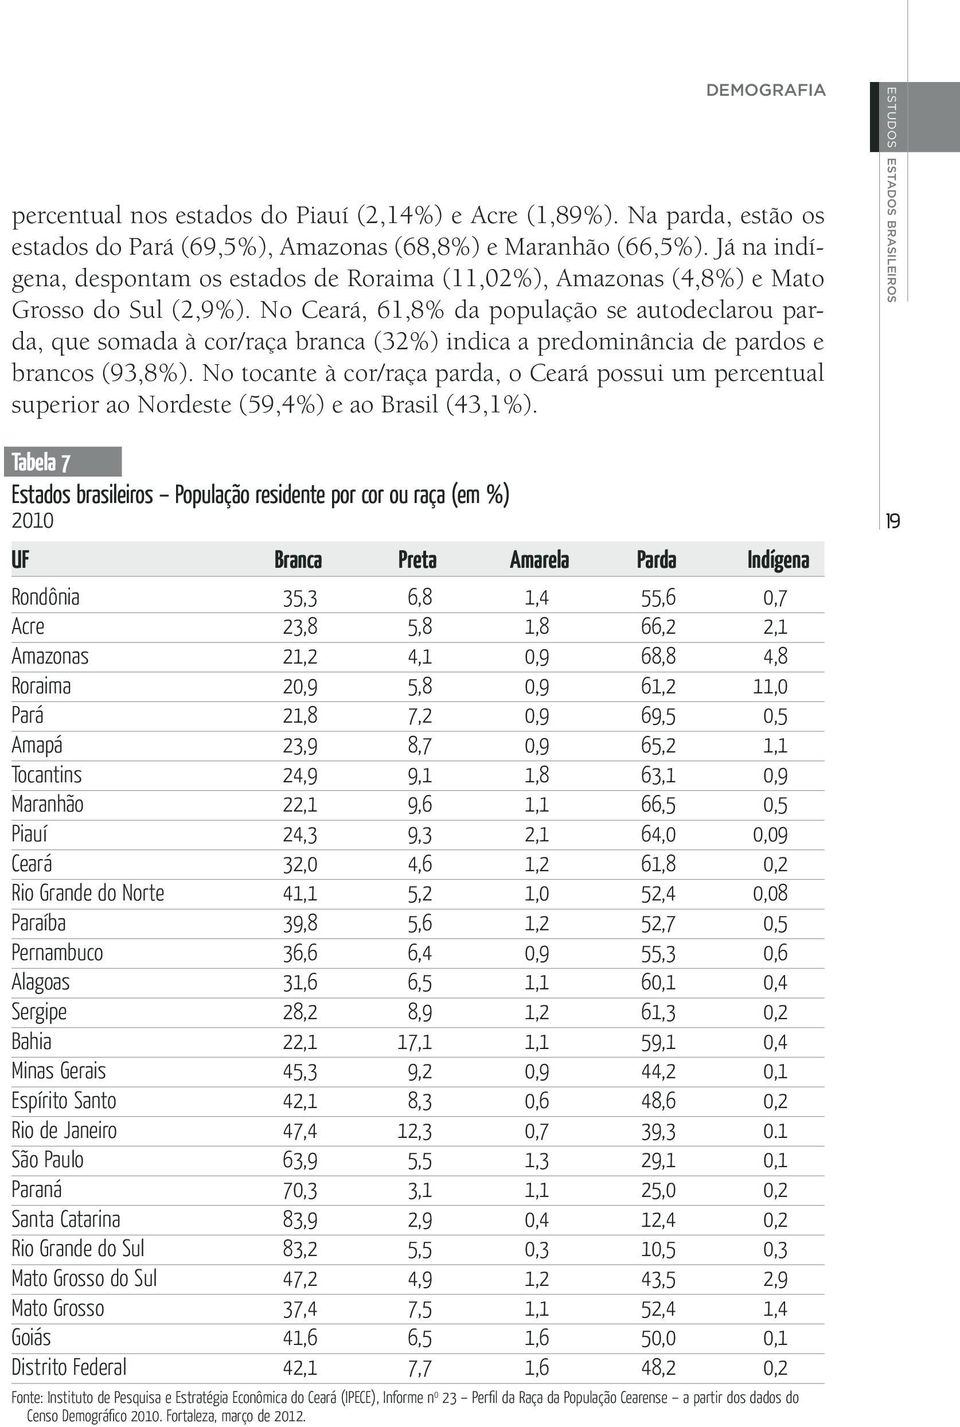 No Ceará, 61,8% da população se autodeclarou parda, que somada à cor/raça branca (32%) indica a predominância de pardos e brancos (93,8%).